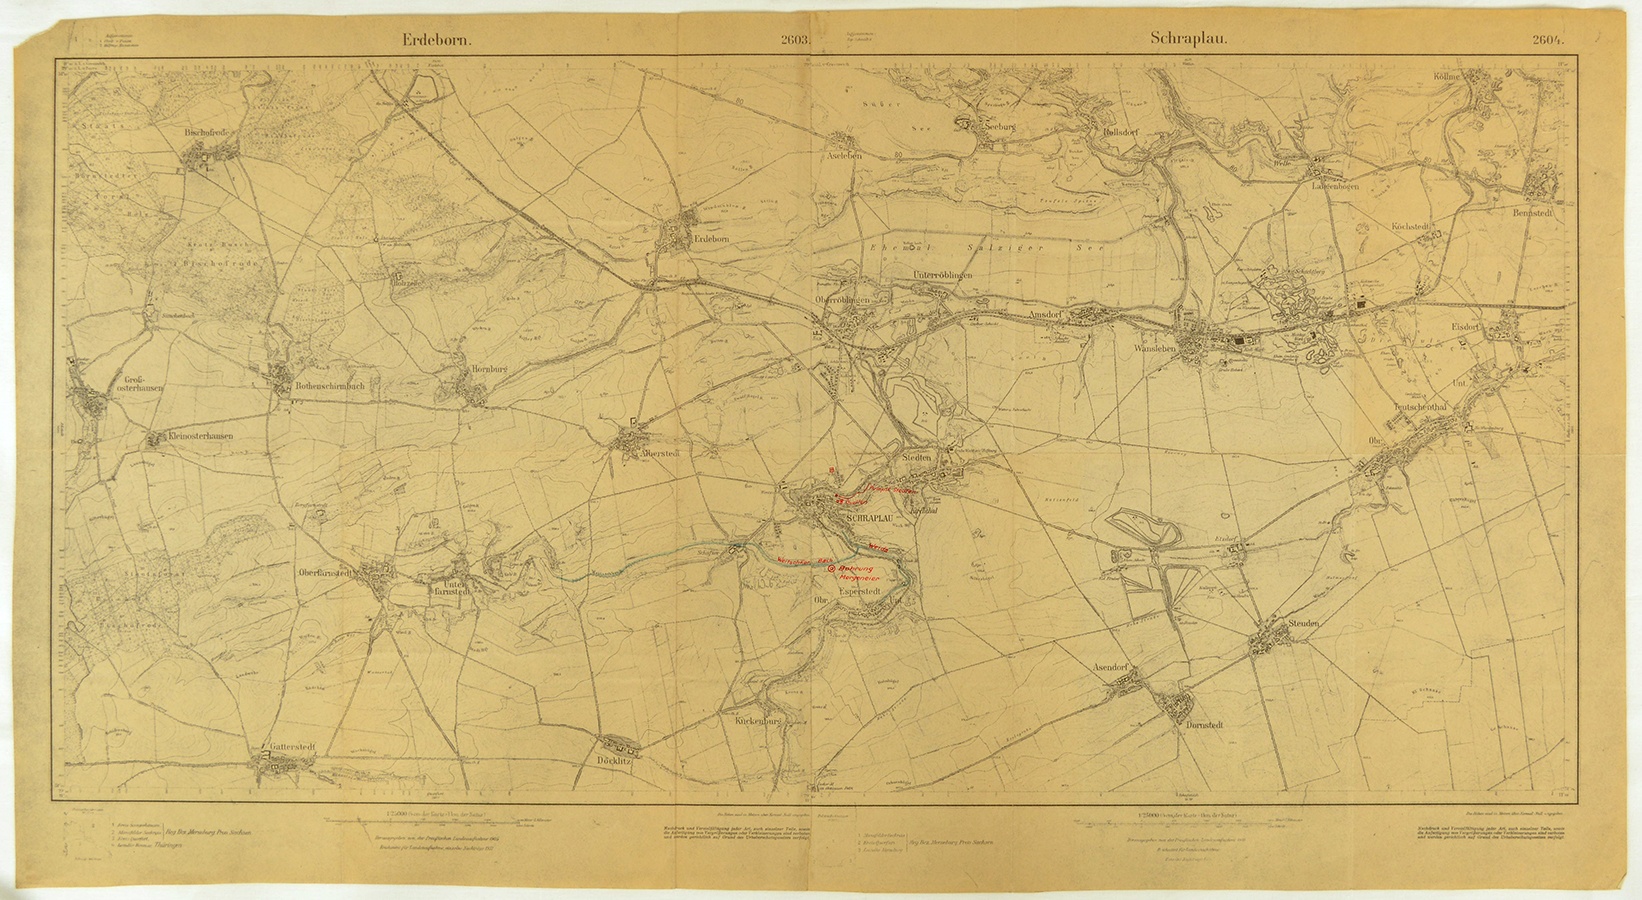 Topographische Karten der Gebiete um Erdeborn (Nr. 2603) und Schraplau (Nr. 2604) (Mansfeld-Museum im Humboldt-Schloss CC BY-NC-SA)